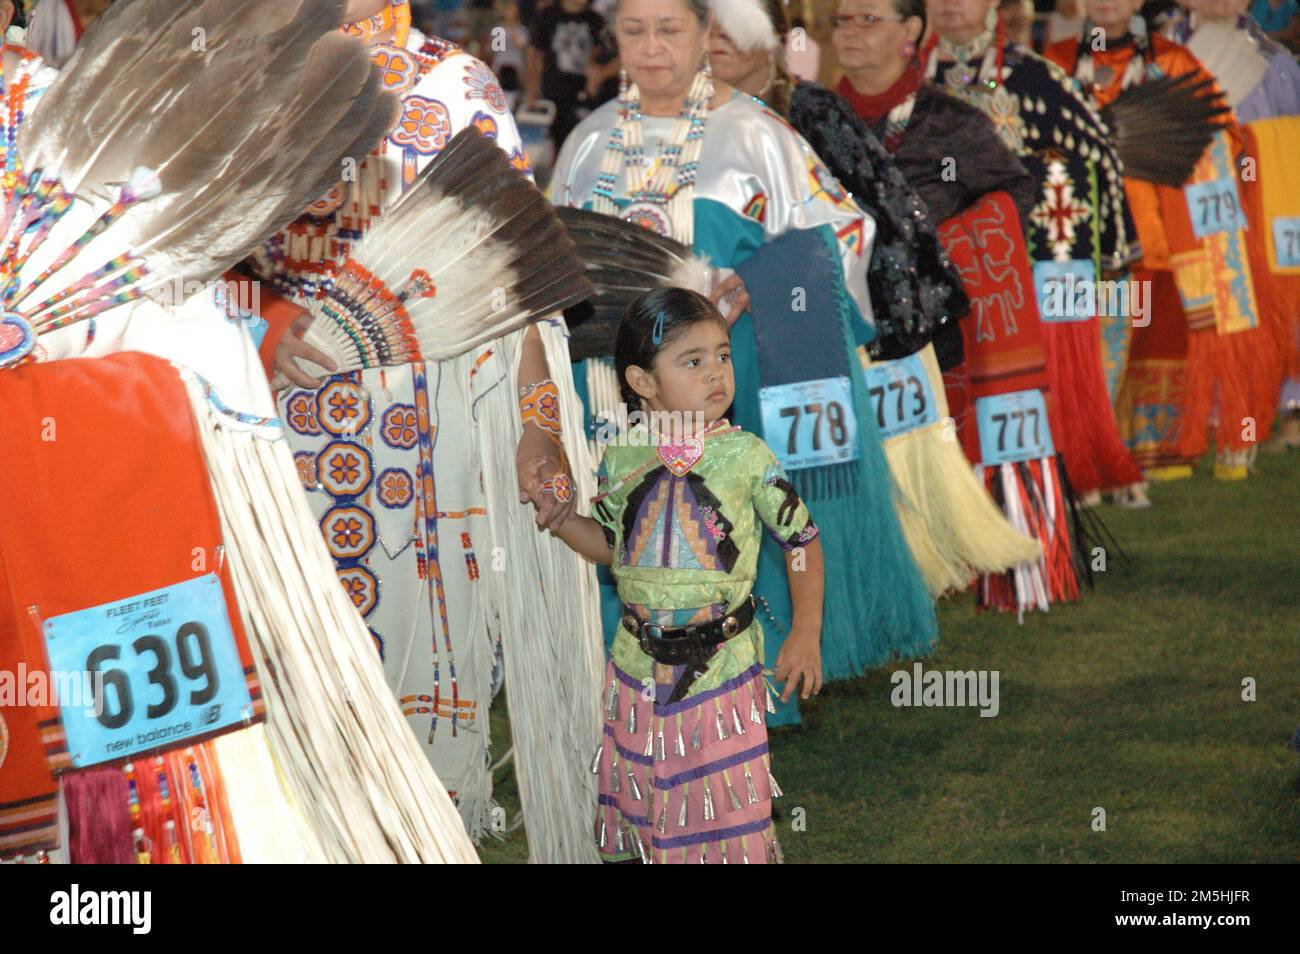 Cherokee Hills Byway - Inter Tribal Pow Wow. Ein kleines Indianermädchen, gekleidet in voller Pow-Wow-Kleidung, hält die Hand einer der Ältesten, während viele Ältere stehen, gekleidet in vollen Pow-Wow-Regalien, wie bunten Kleidern mit aufwendiger Perlenverzierung. Sie sorgen sich um wunderschöne Schals und Fans aus Federn. Jedes ist mit handgefertigtem indianischem Schmuck geschmückt. Lage: Oklahoma Stockfoto